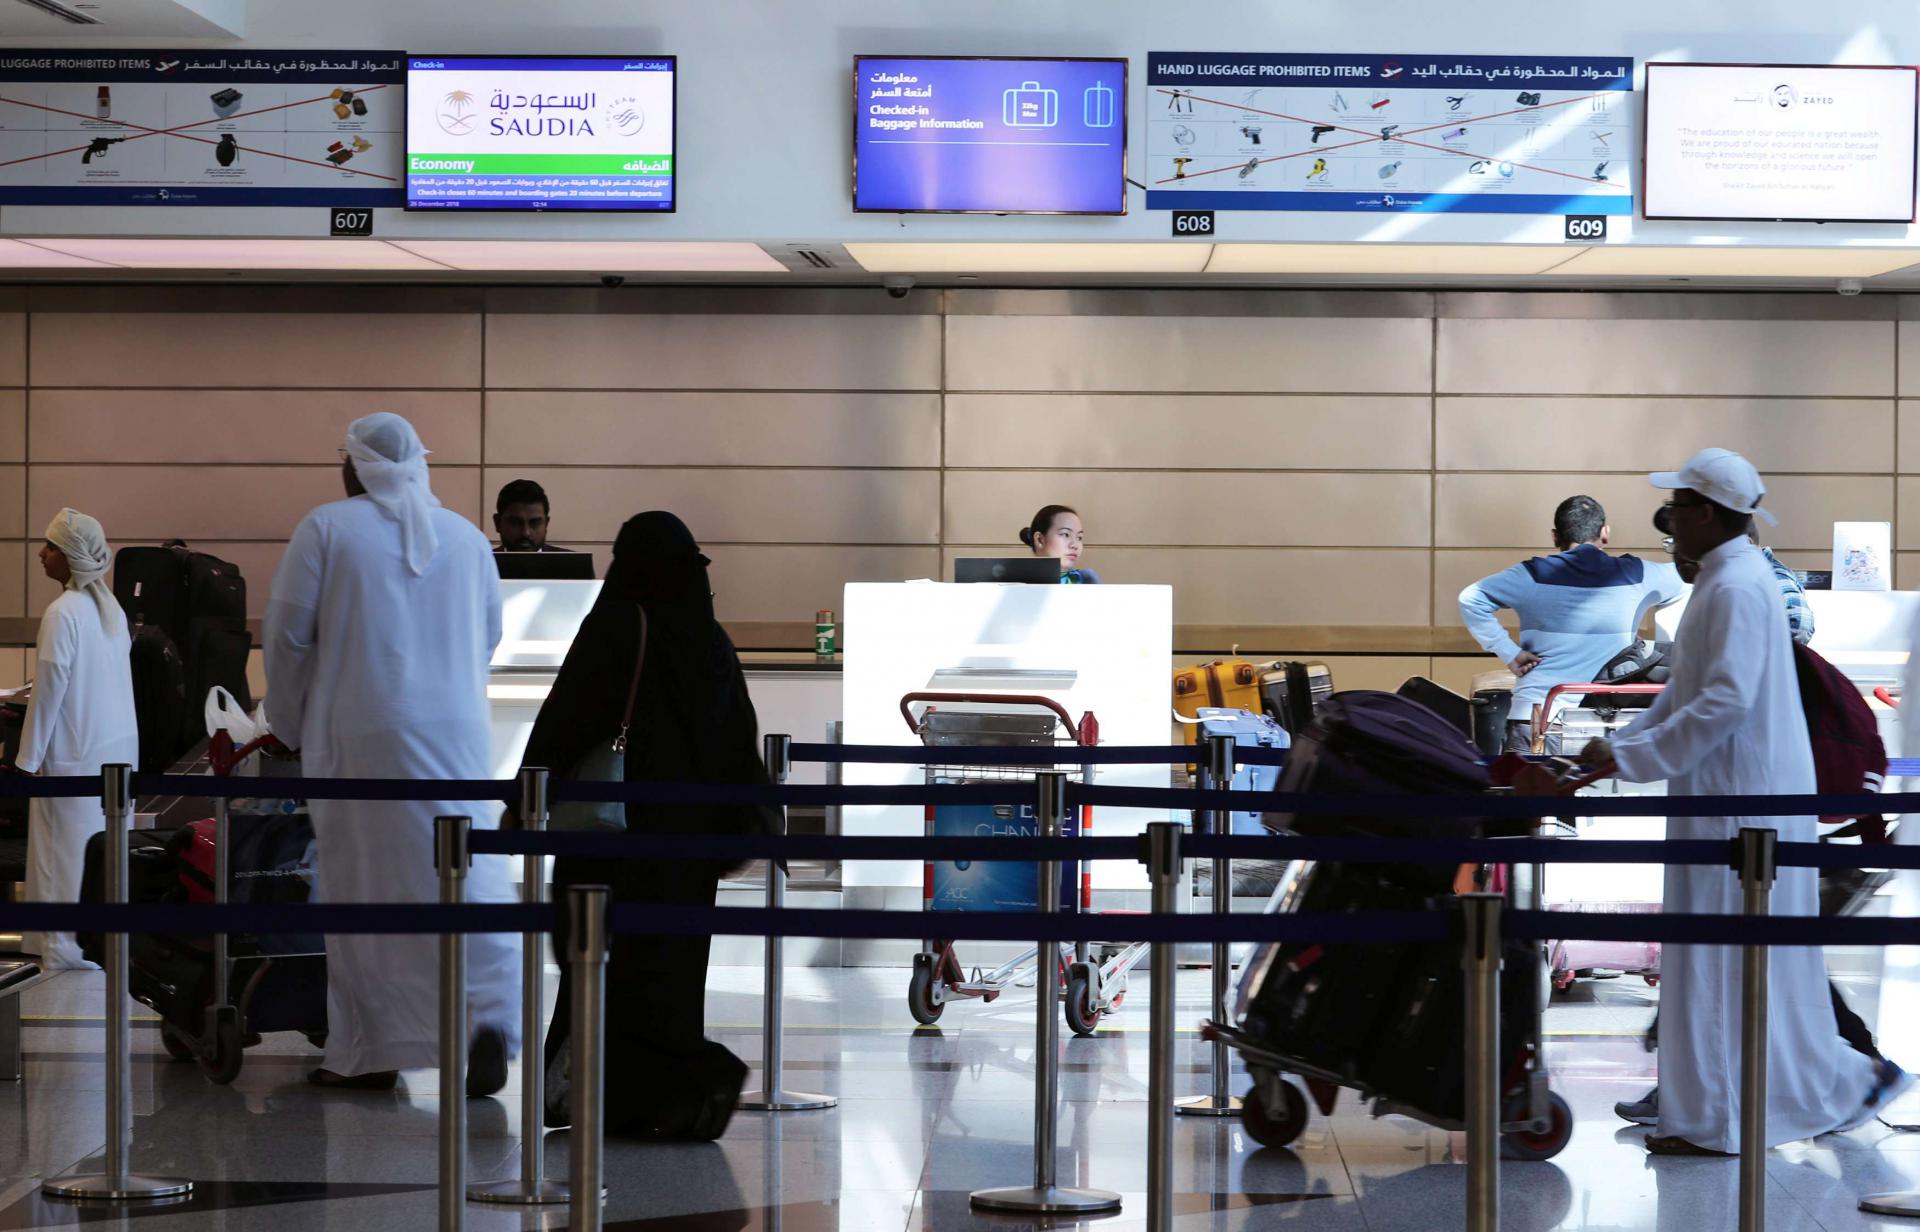 الإمارات لم تمنع القطريين من الدخول منذ بدء المقاطعة قبل سنتين